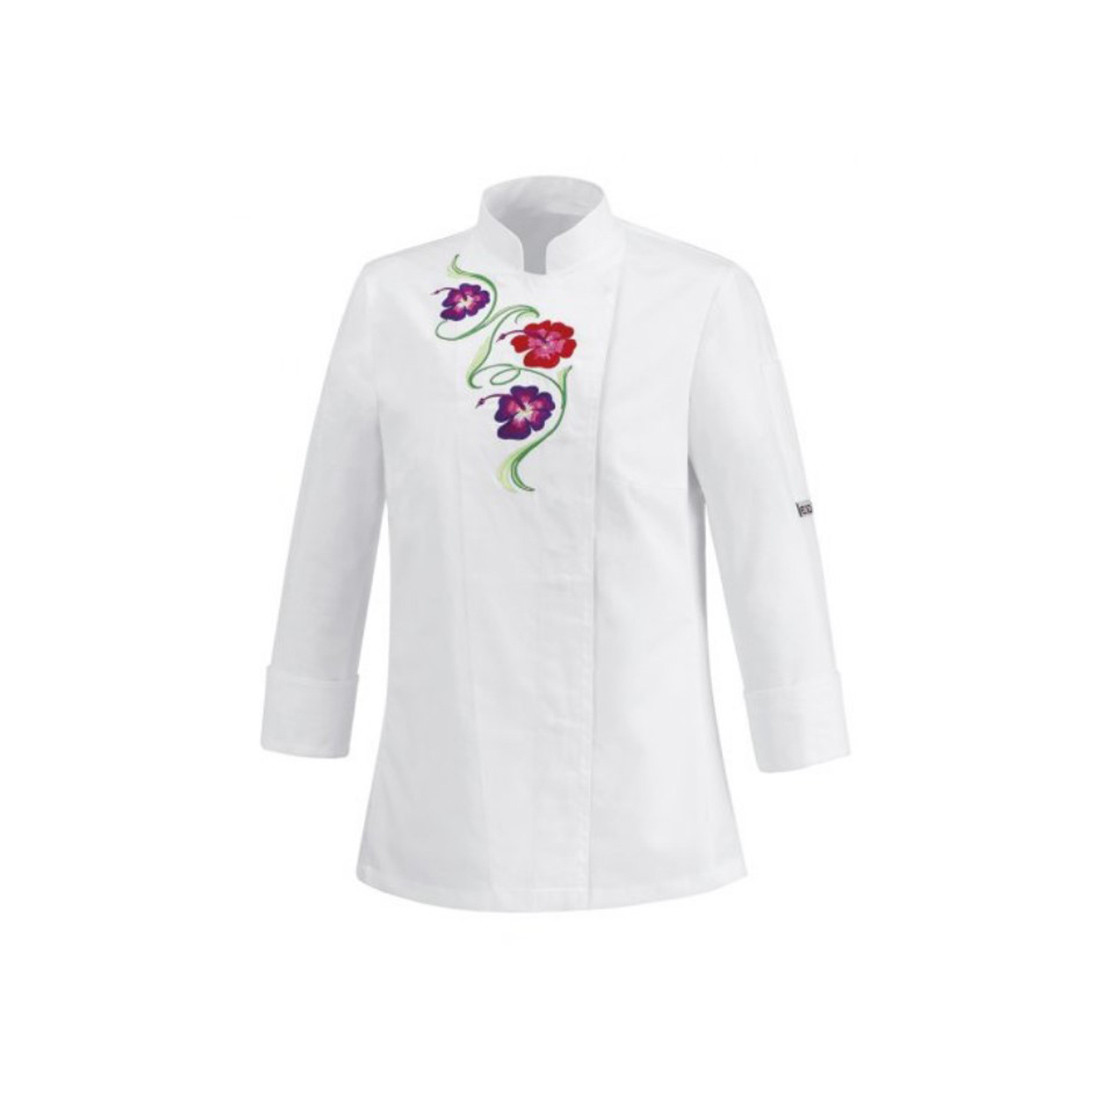 Flowers Women's Chef Jacket, 100% cotton - Safetywear